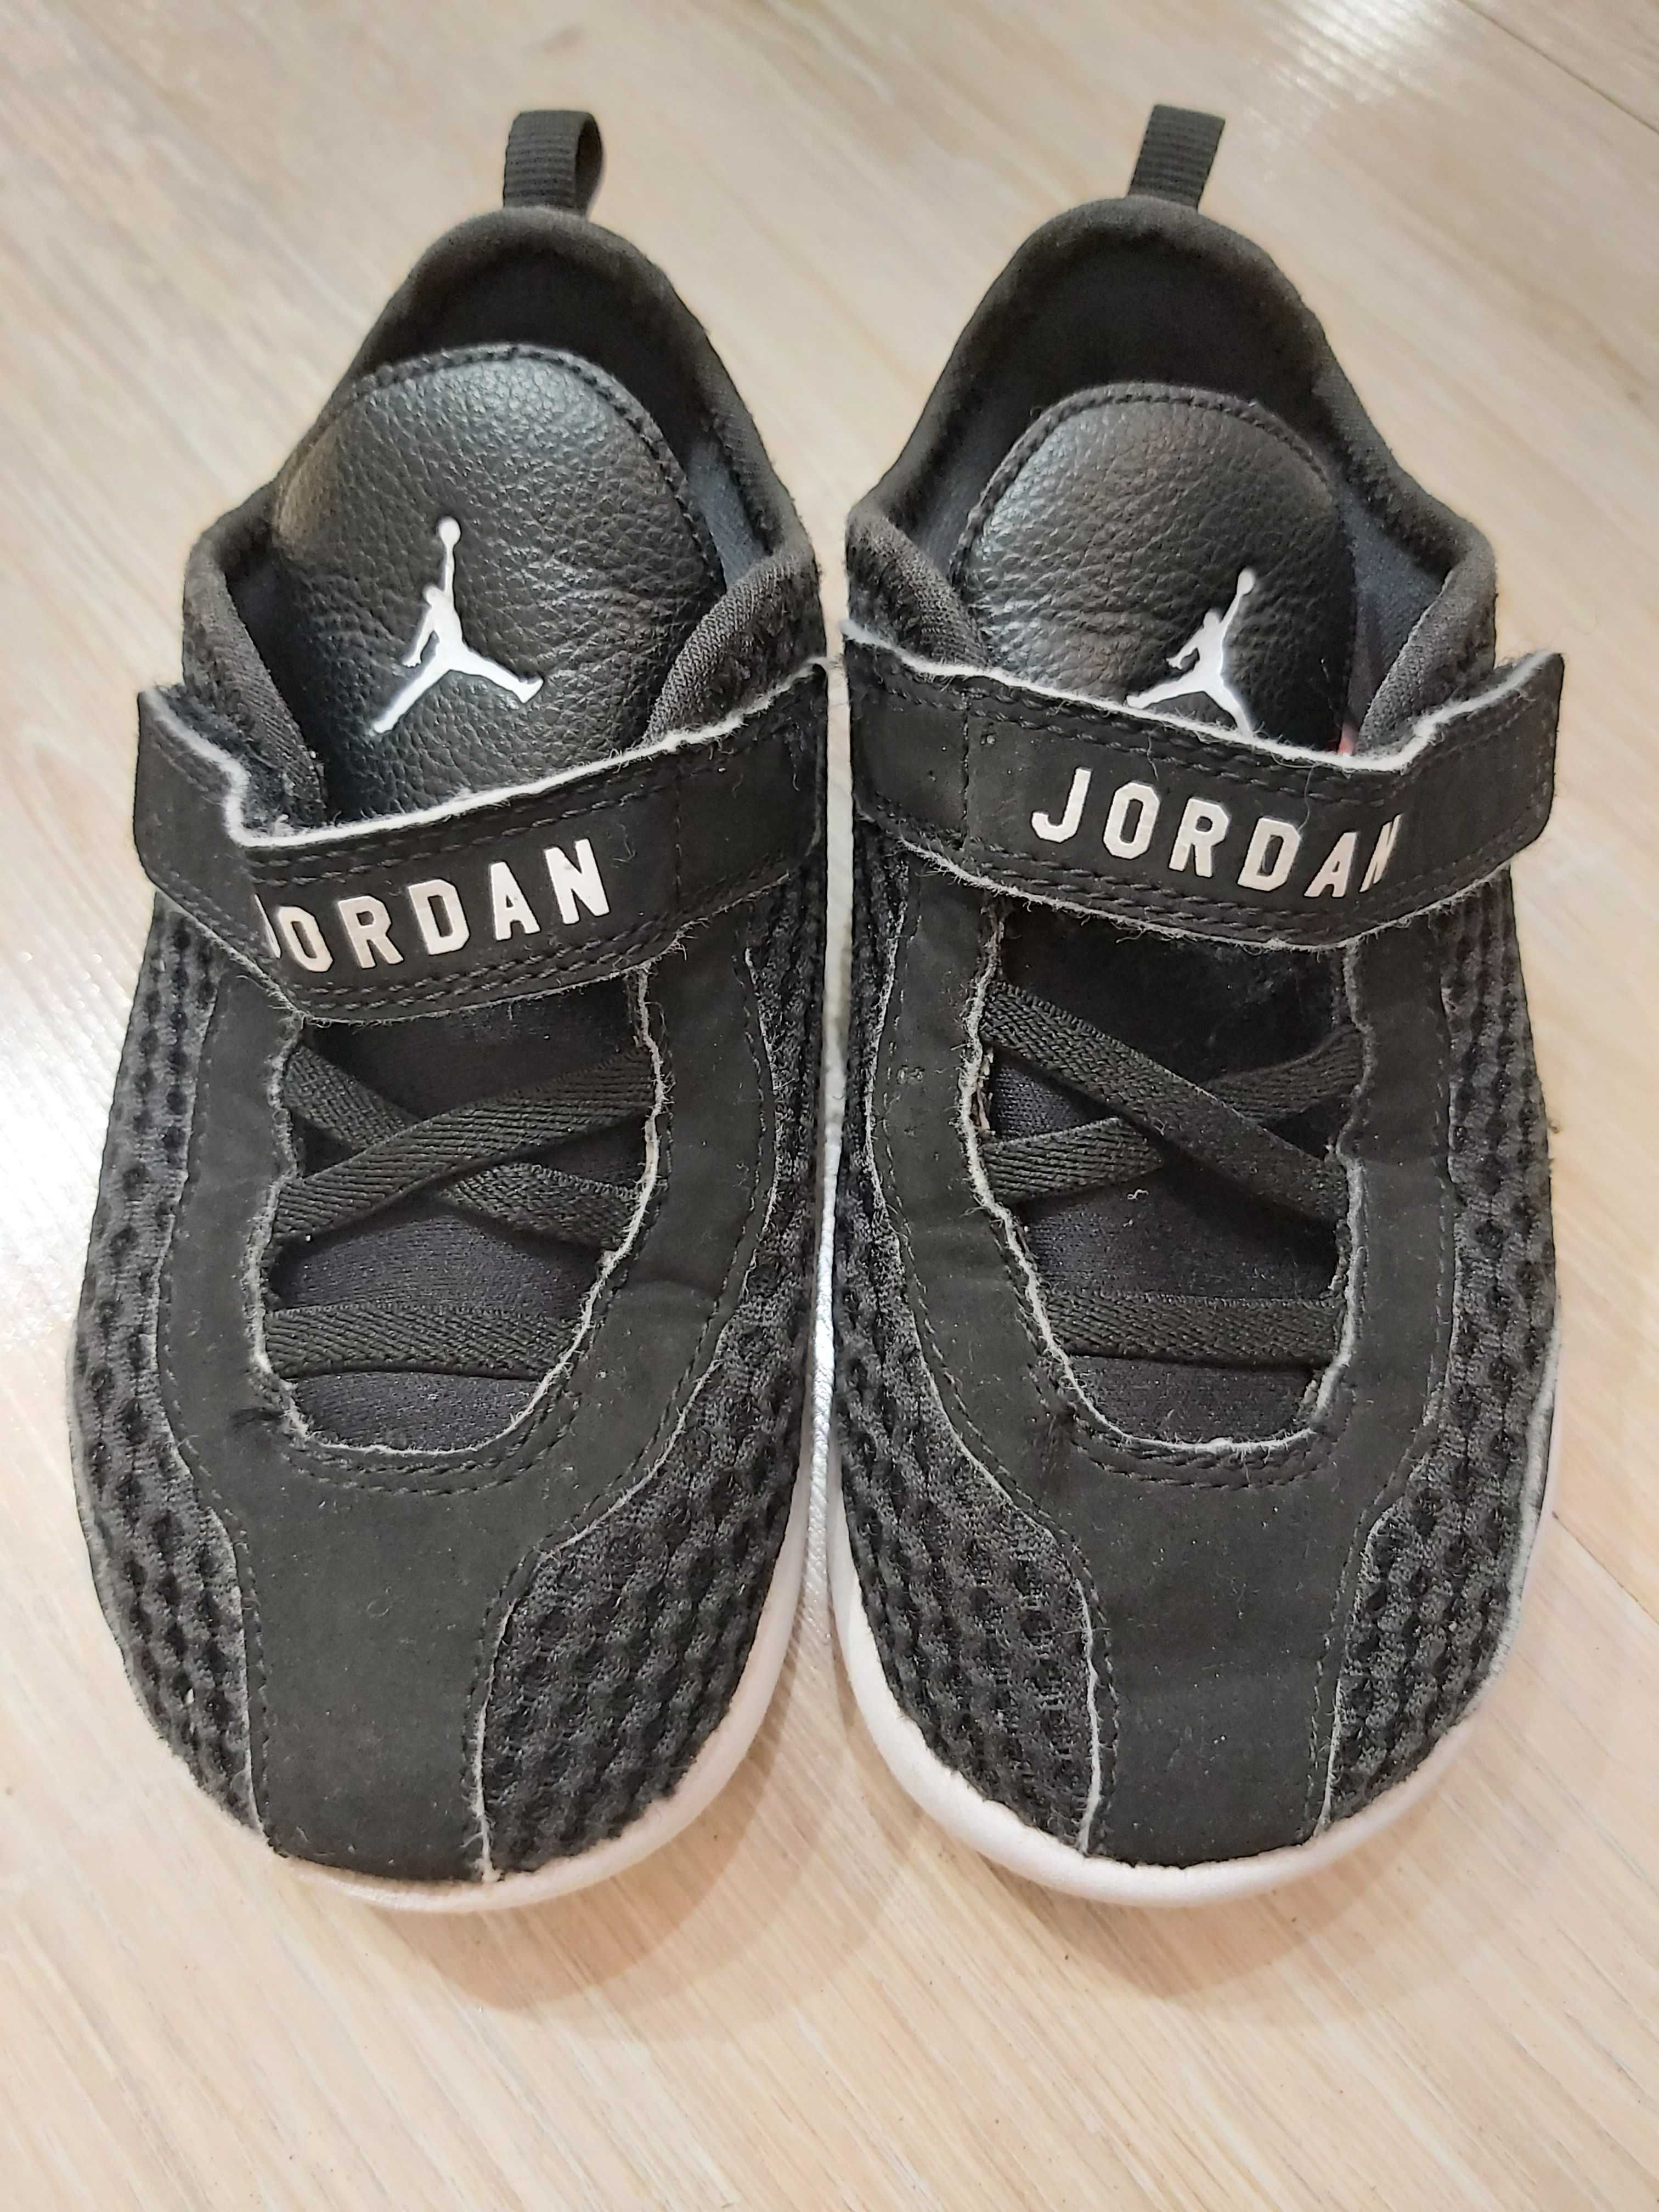 Buty, adidasy na rzepy Nike Jordan, rozm. 27, SUPER STAN